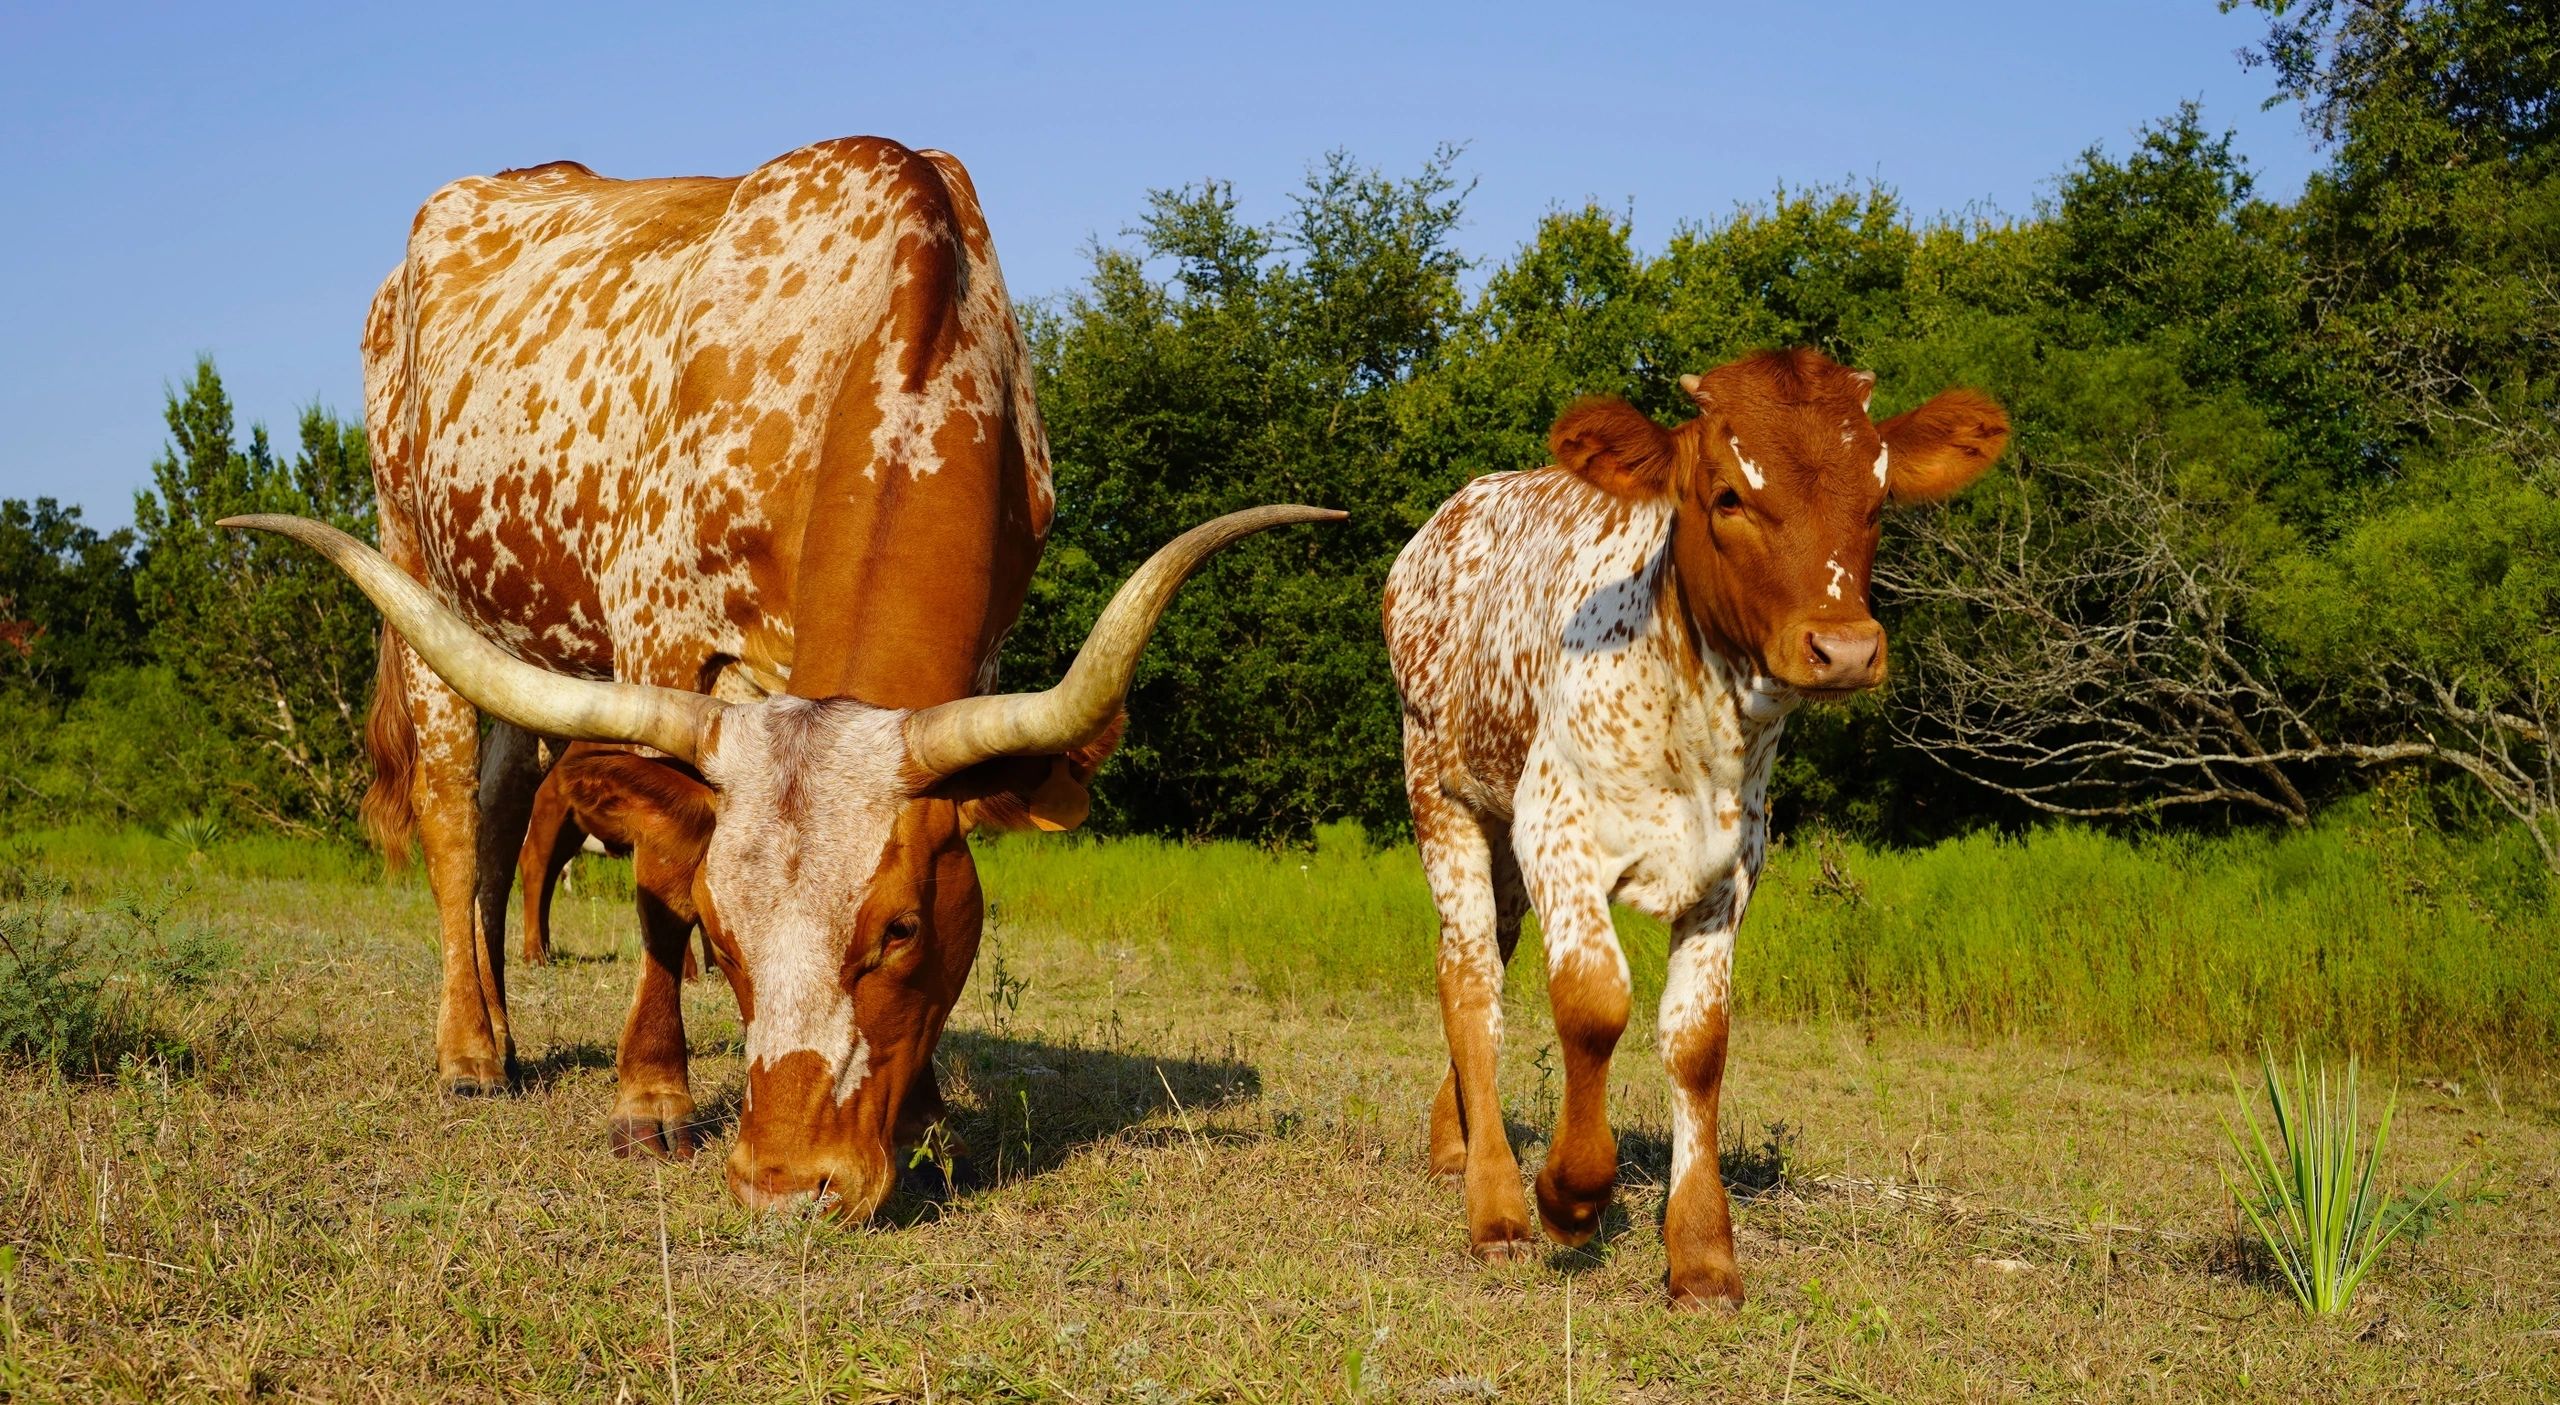 Longhorn cattle